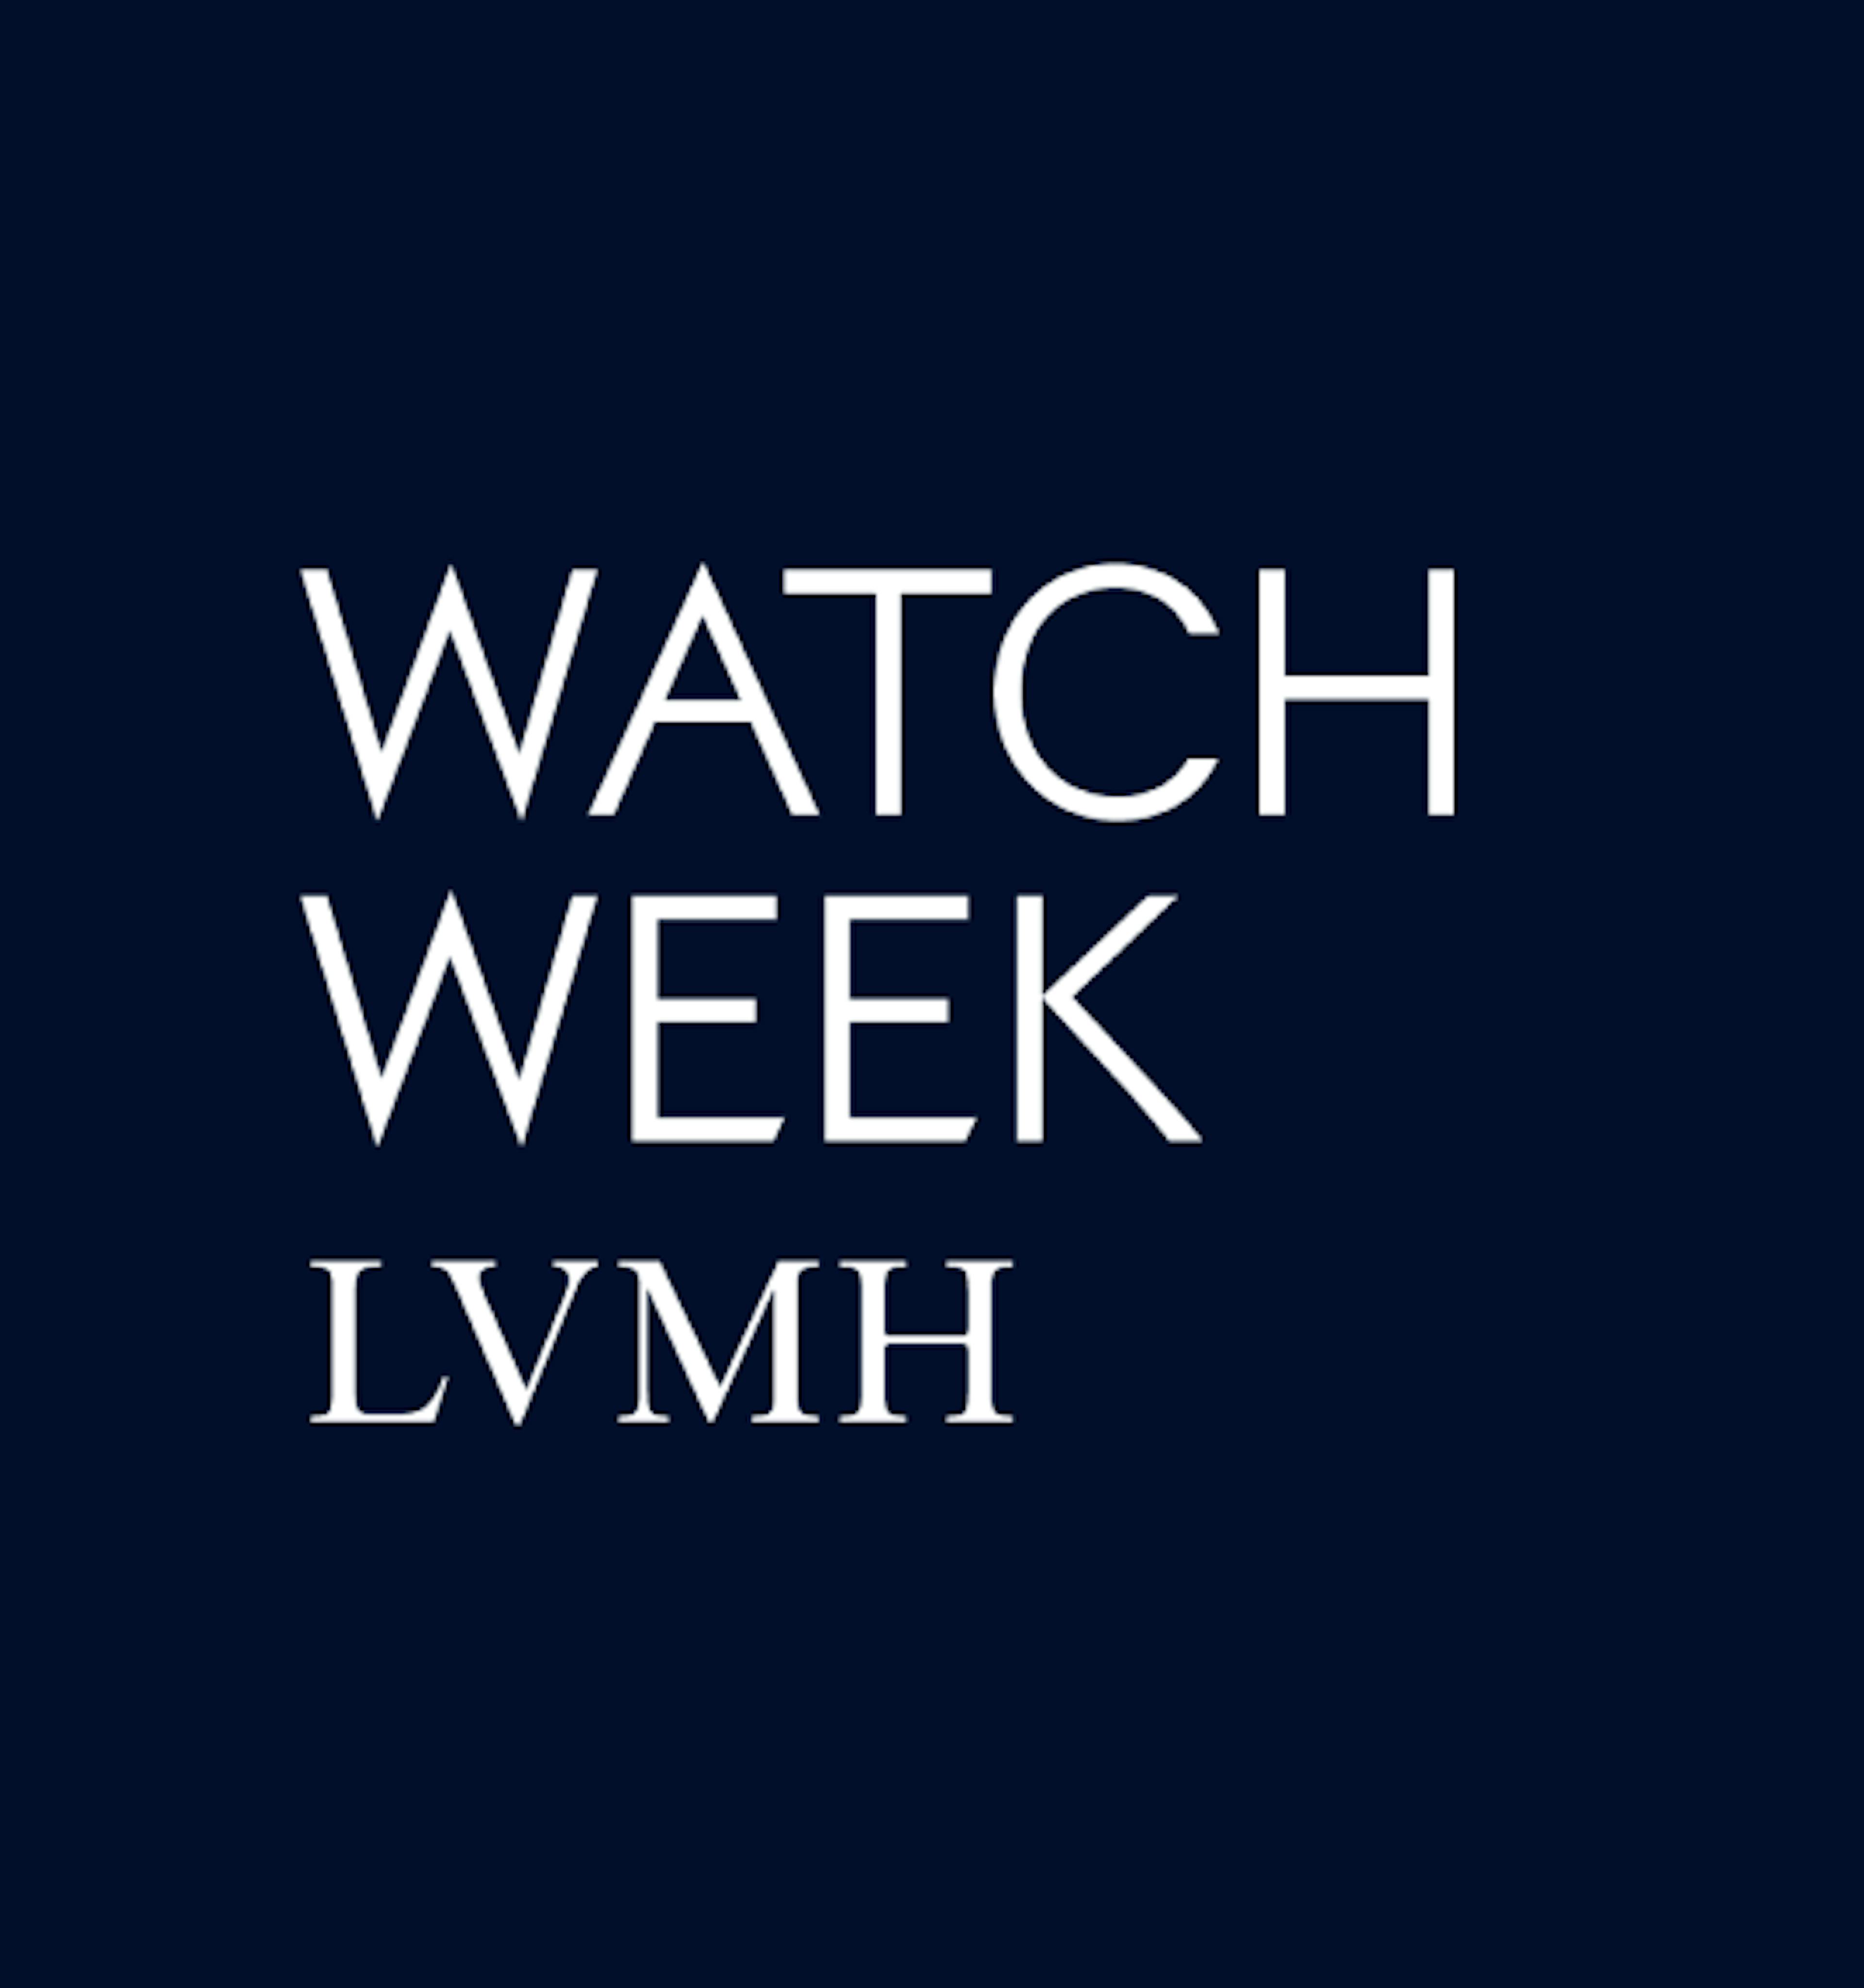 Watch Week LVMH logo